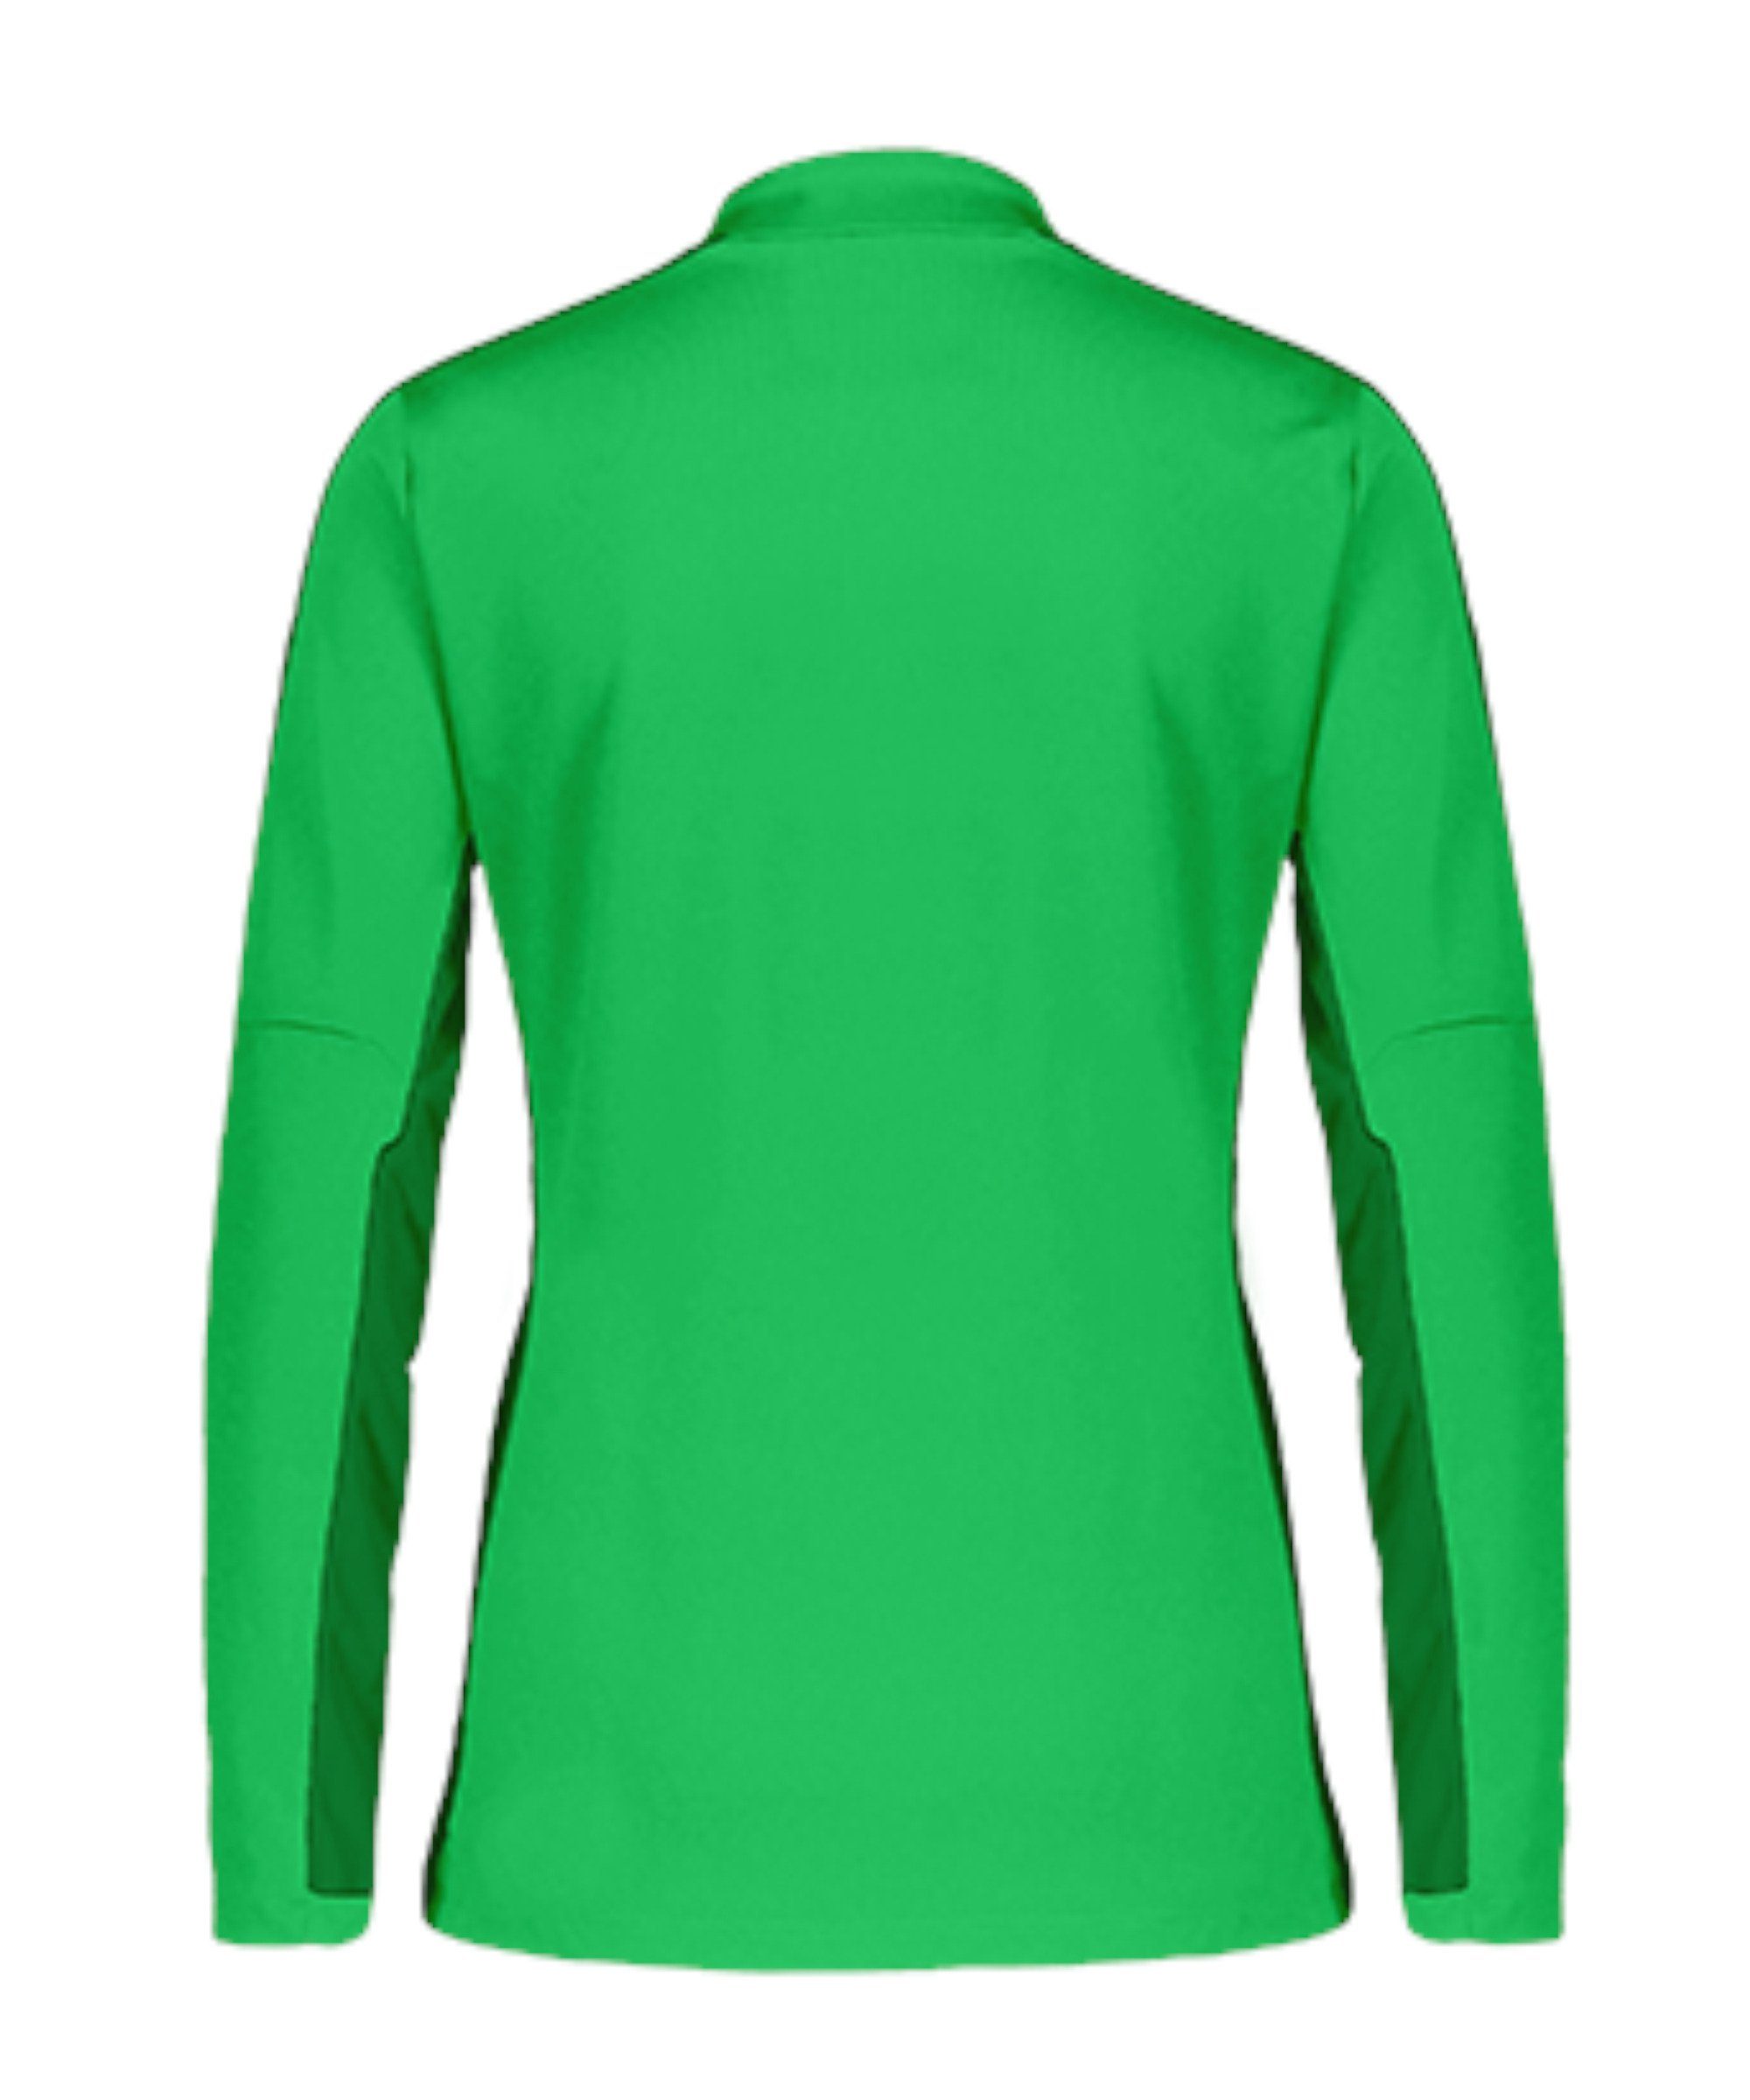 Sweater Nike Drill 23 Academy gruengruenweiss Damen Top